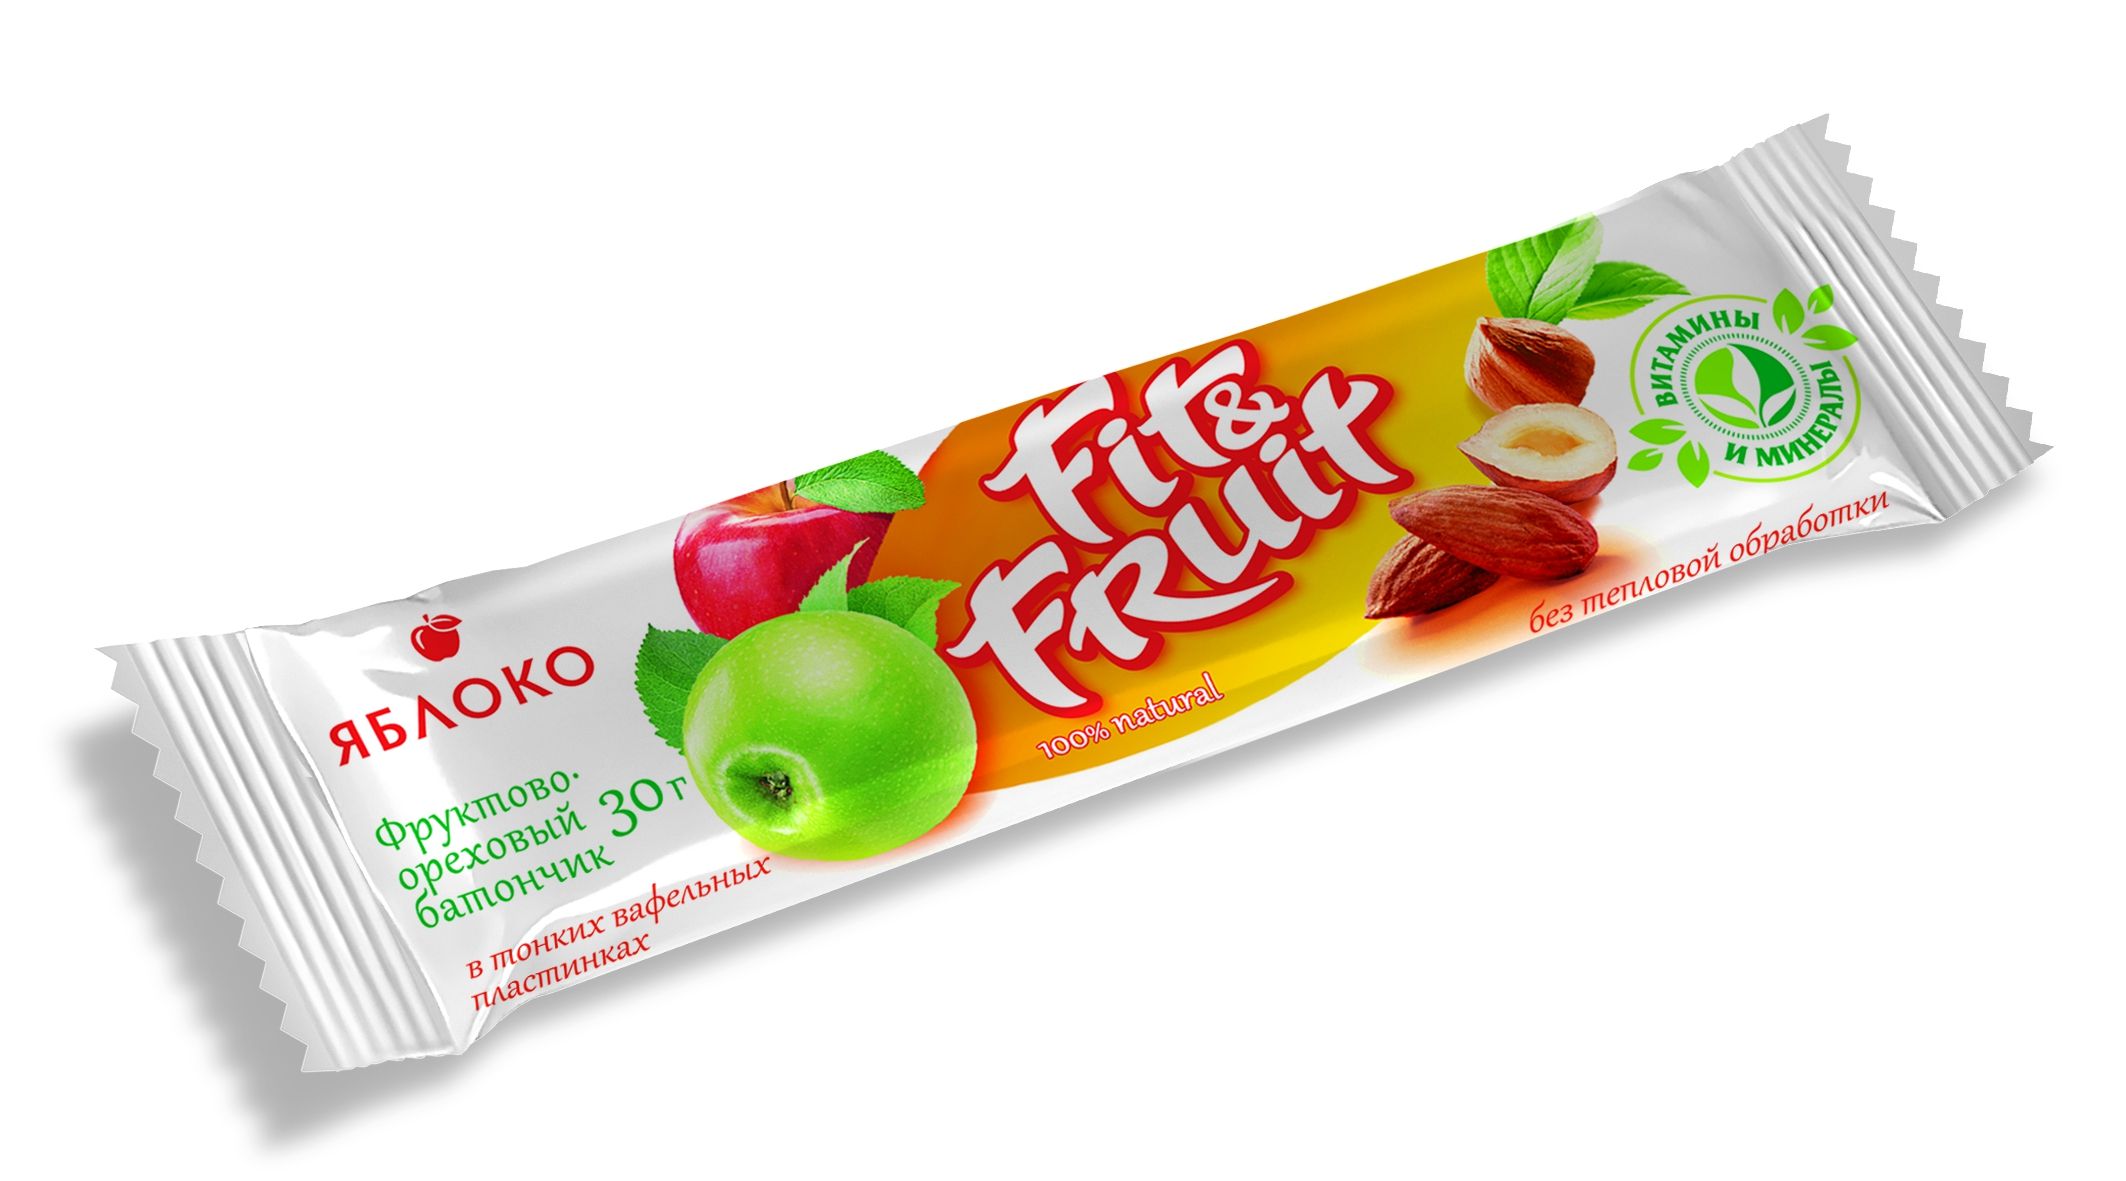  Fit&Fruit FF-007, , 30